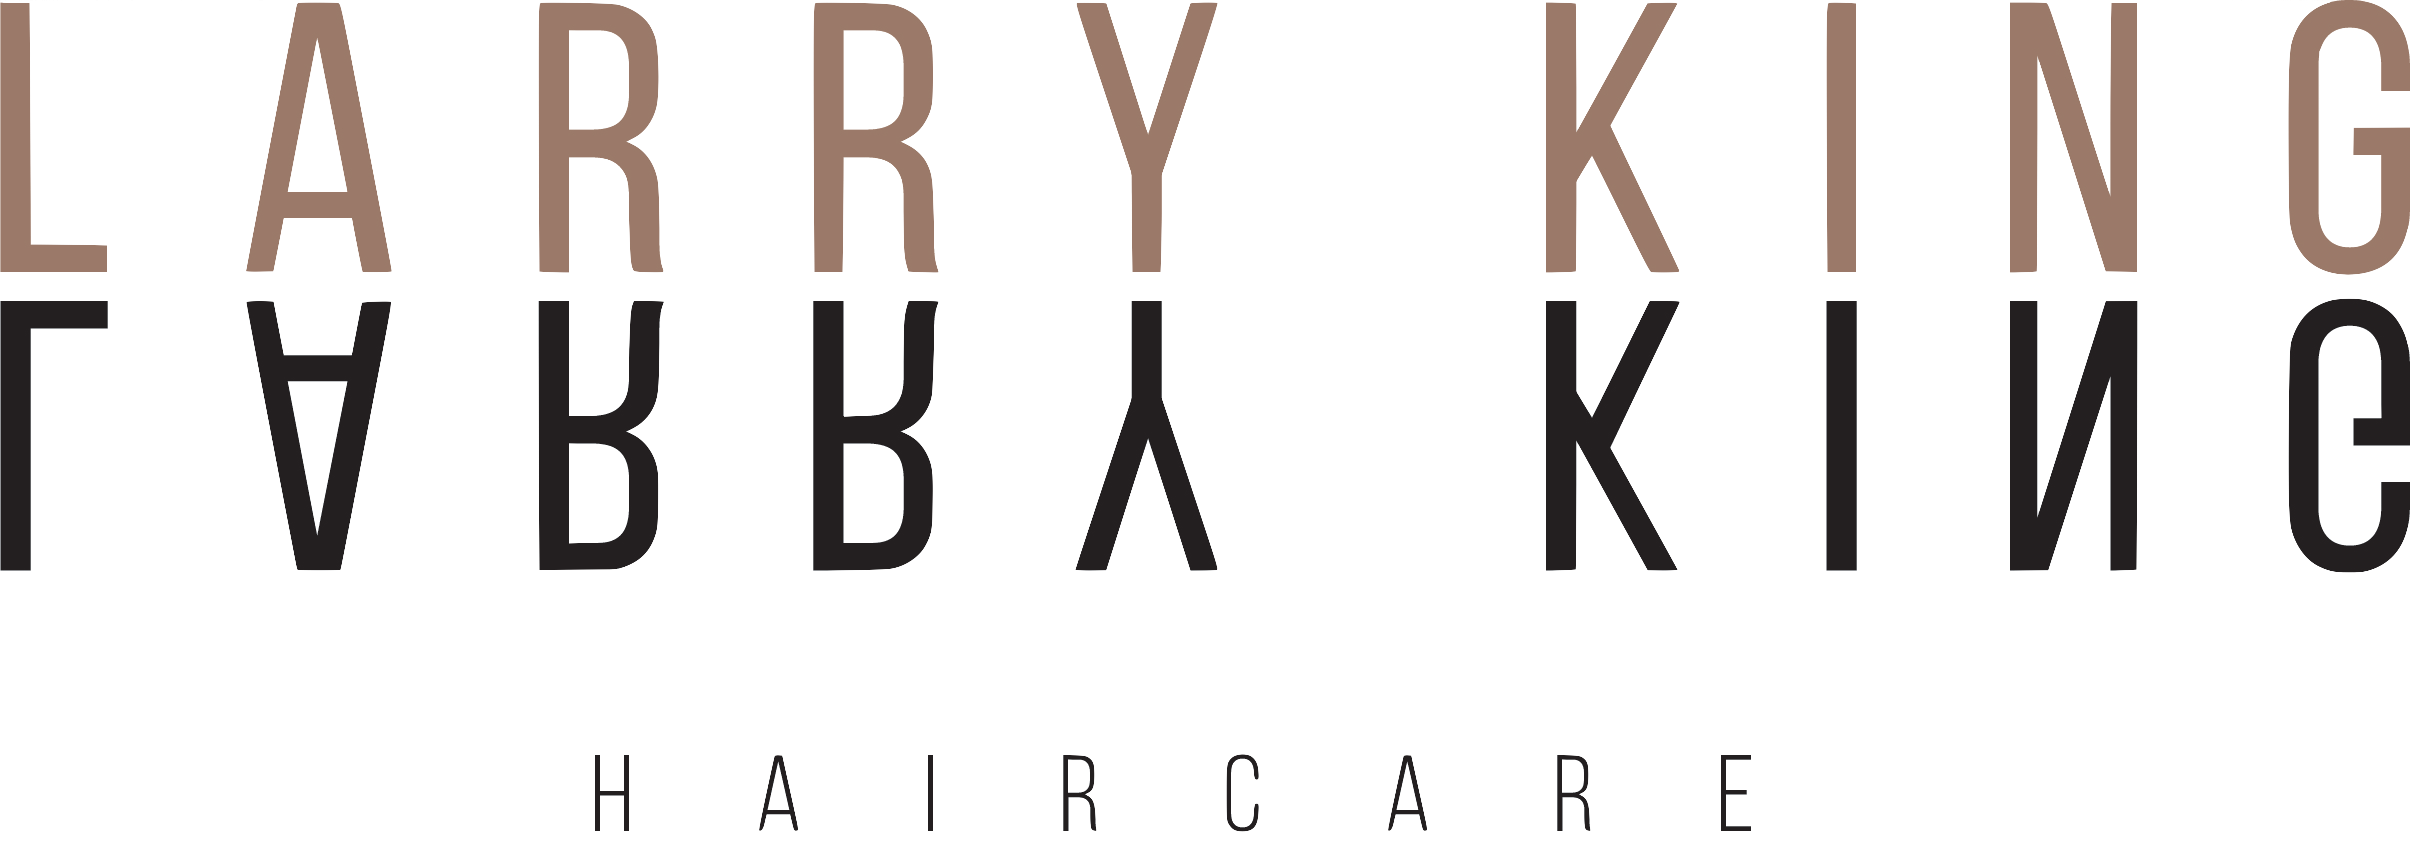 Larry King Brand Logo